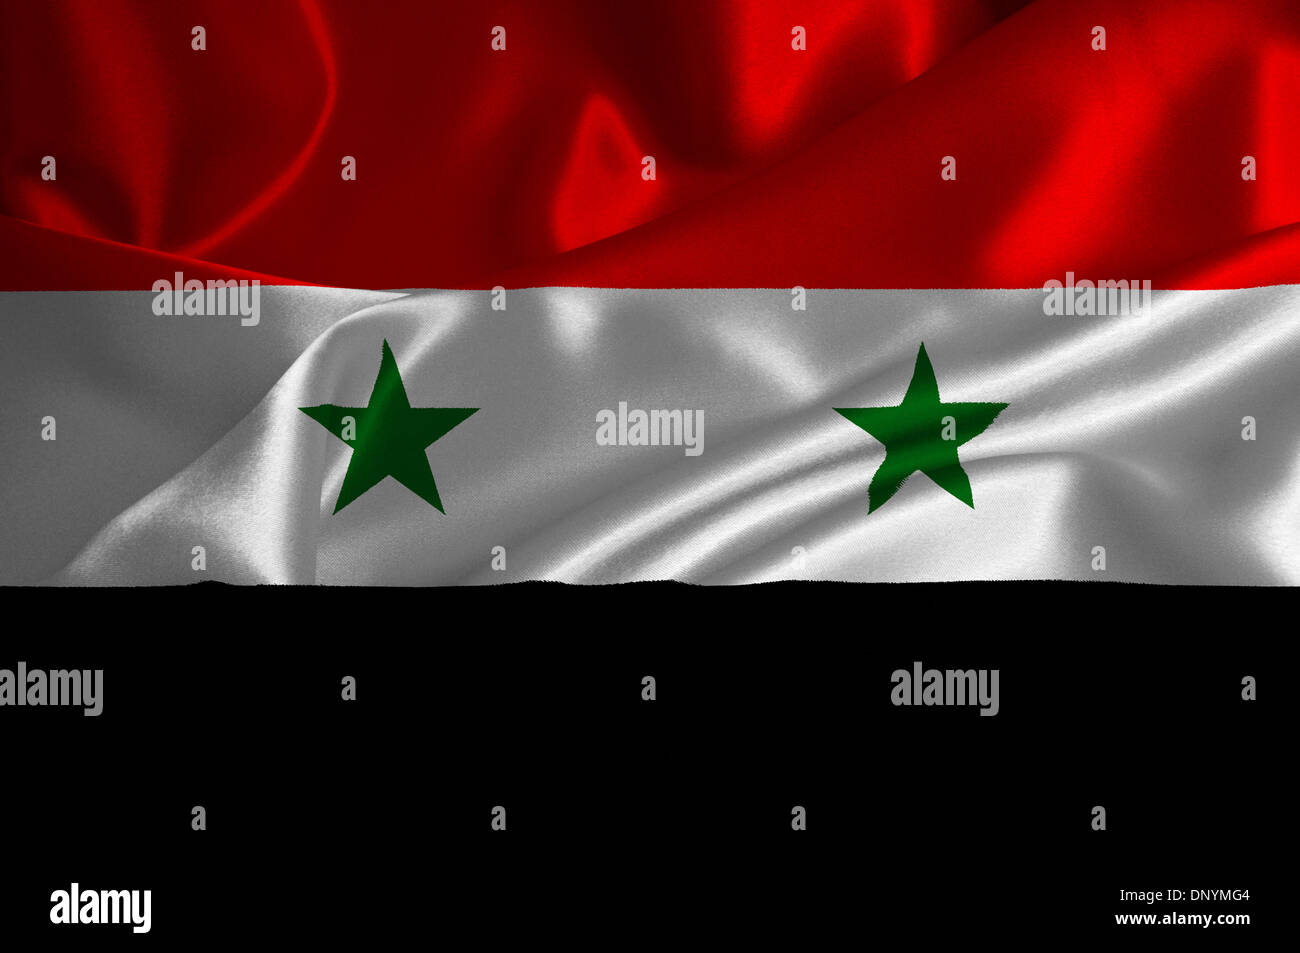 Syria flag on satin texture. Stock Photo